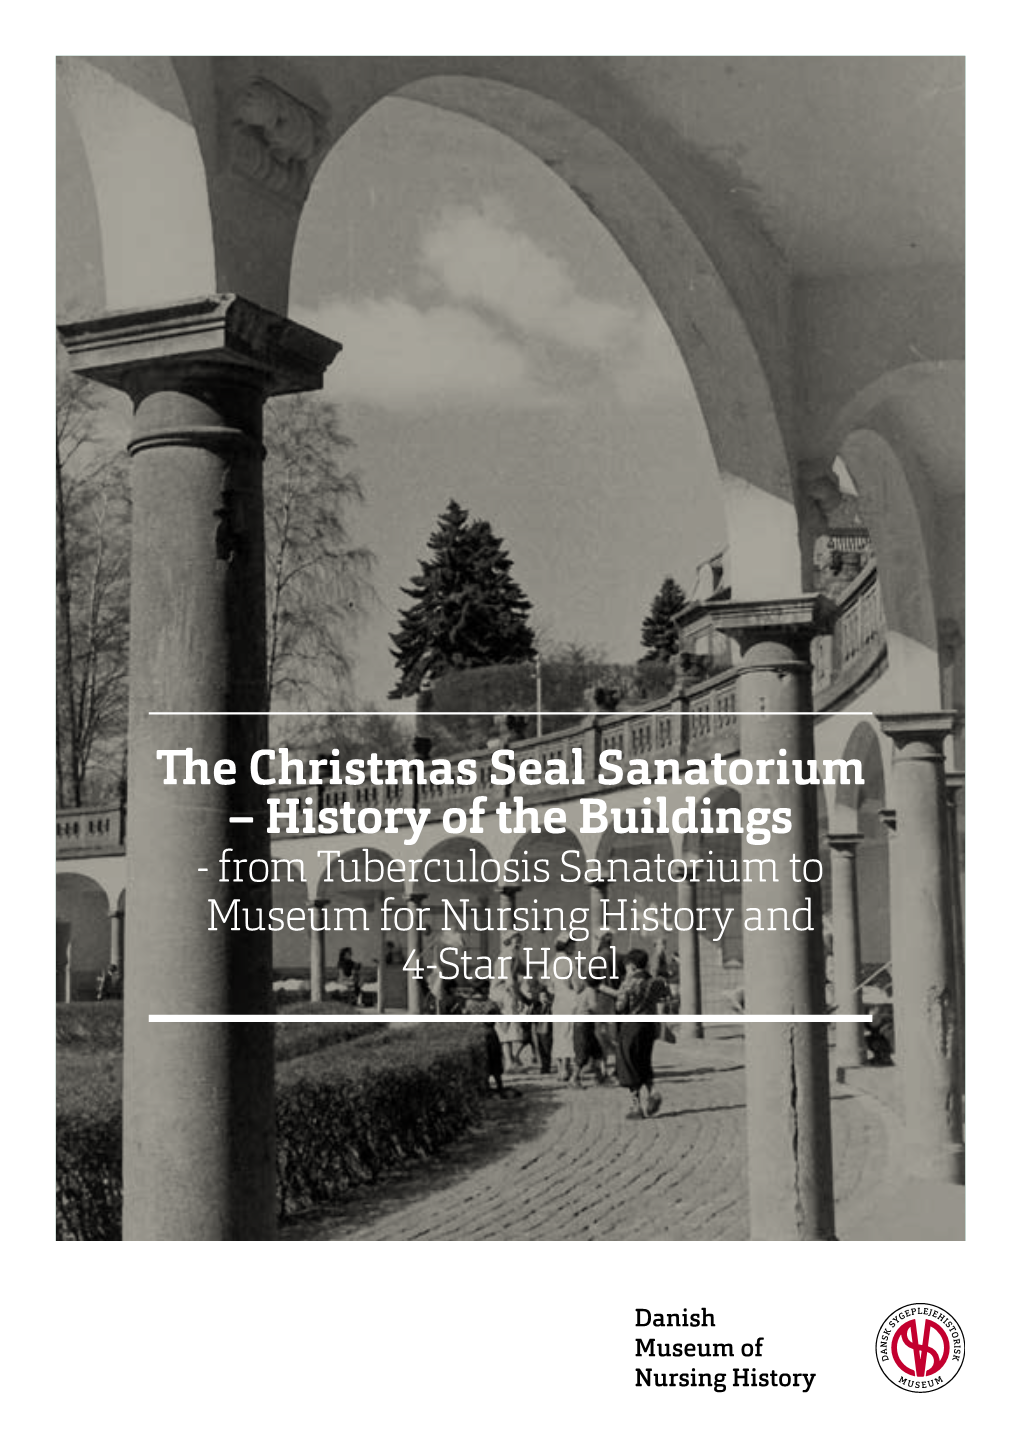 The Christmas Seal Sanatorium